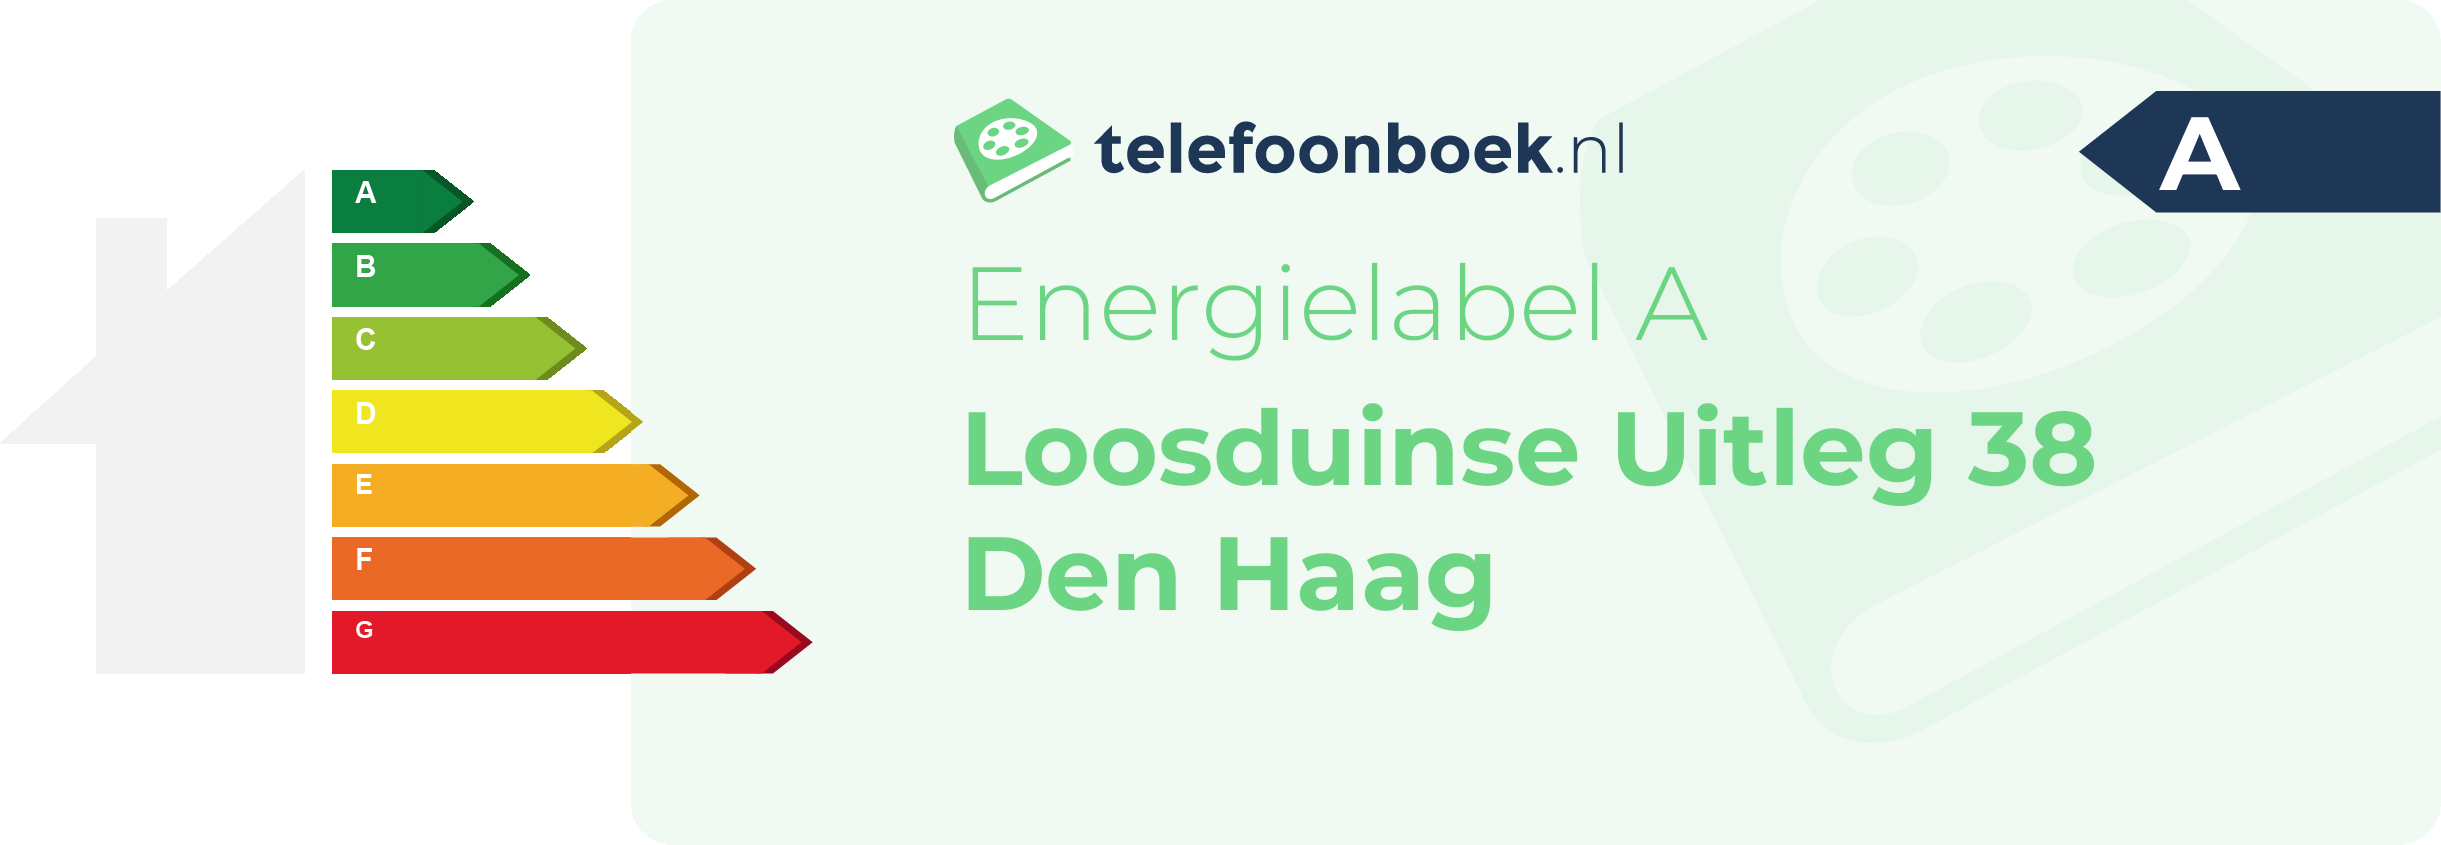 Energielabel Loosduinse Uitleg 38 Den Haag